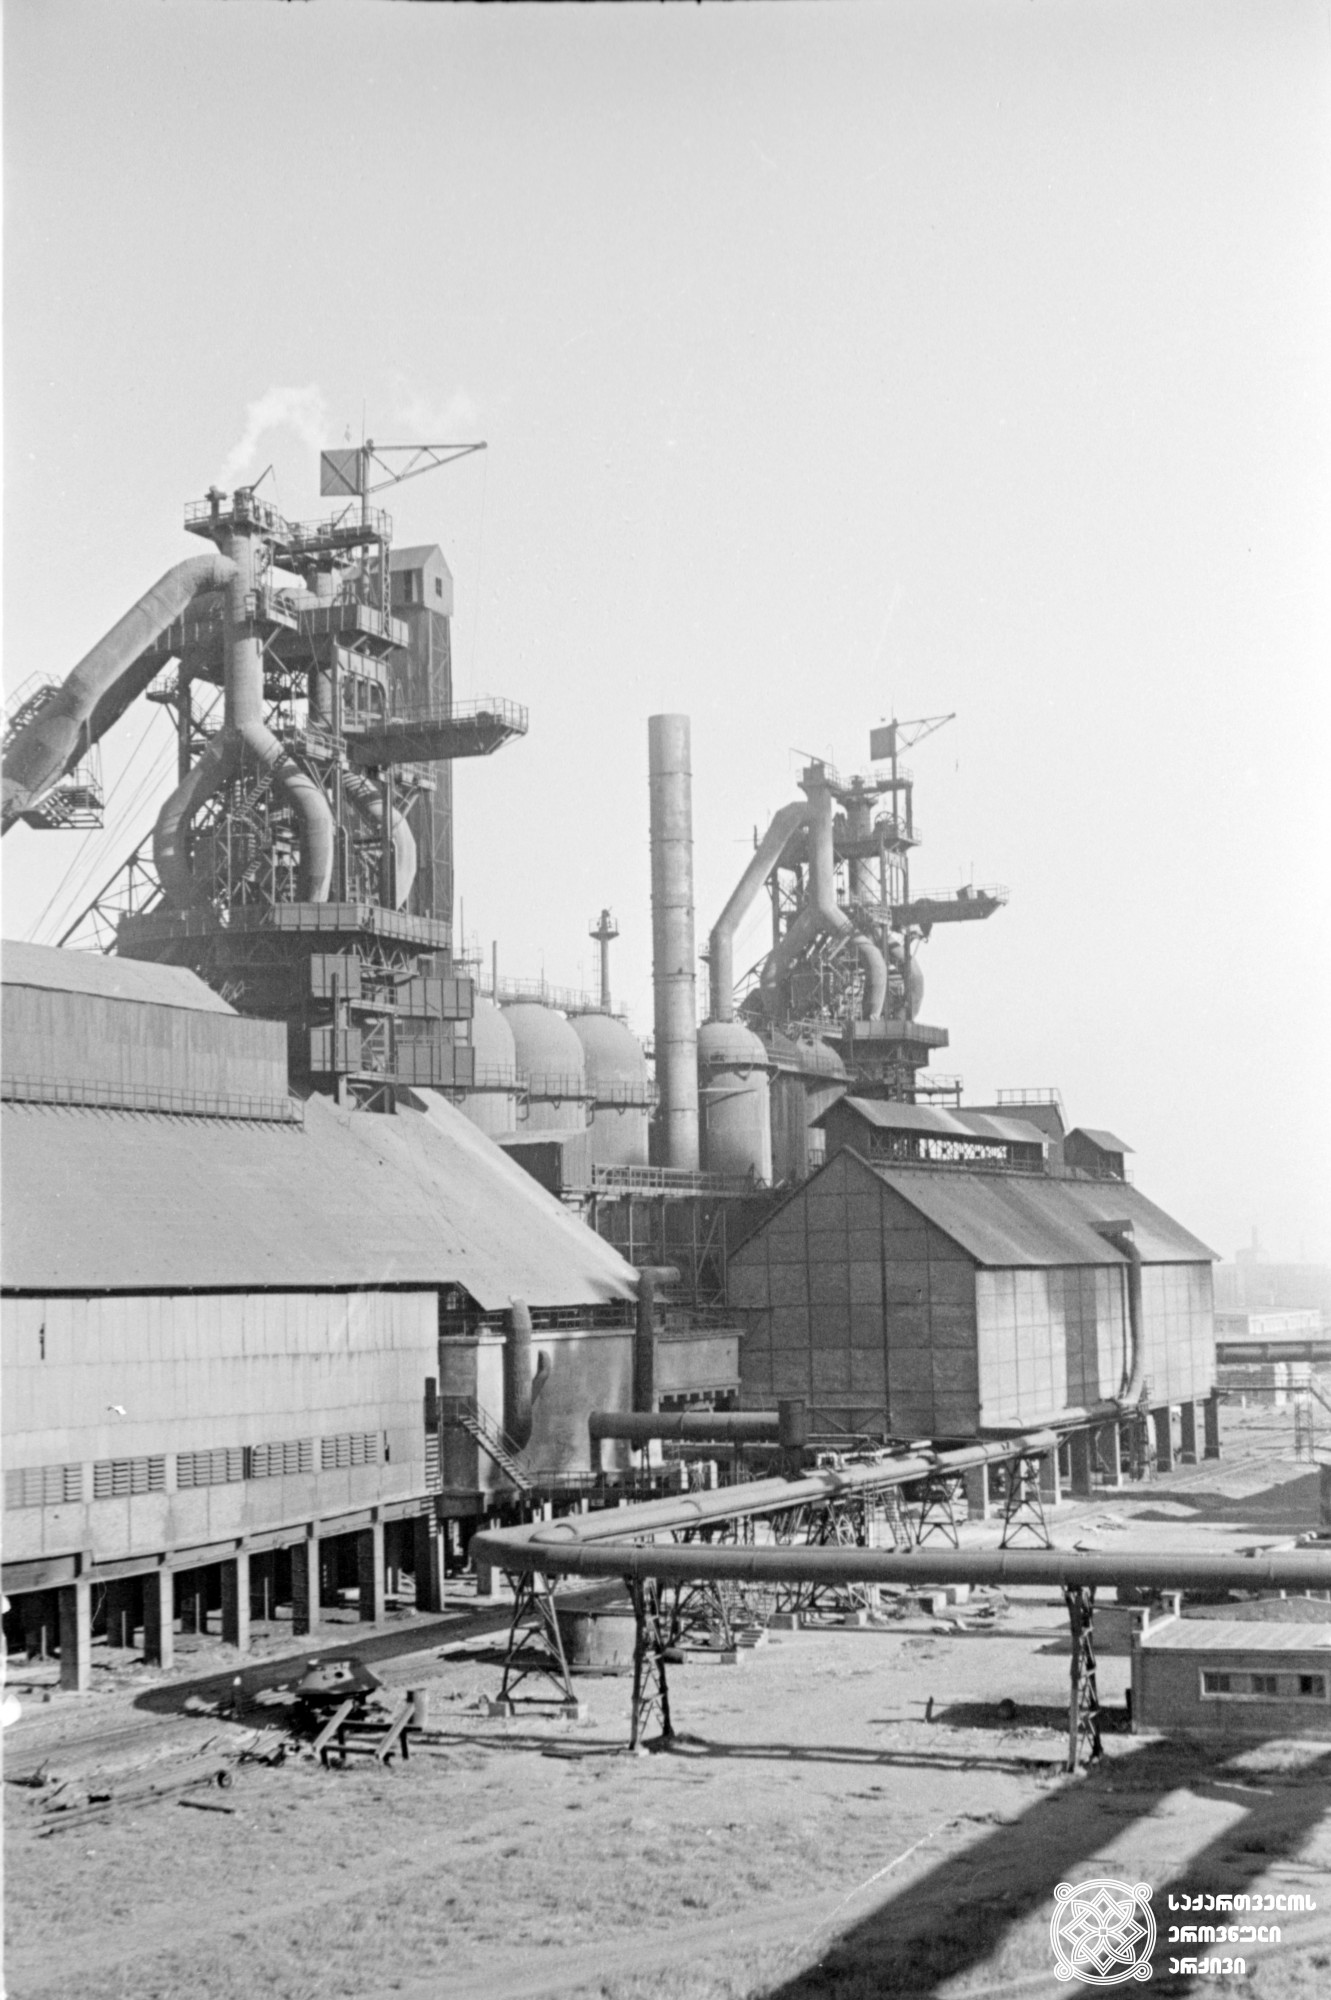 რუსთავის მეტალურგიული ქარხნის საღუმელო საამქროს საერთო ხედი, 1957 წელი.
Rustavi Metallurgical Plant, General view of the mill factory, 1957.